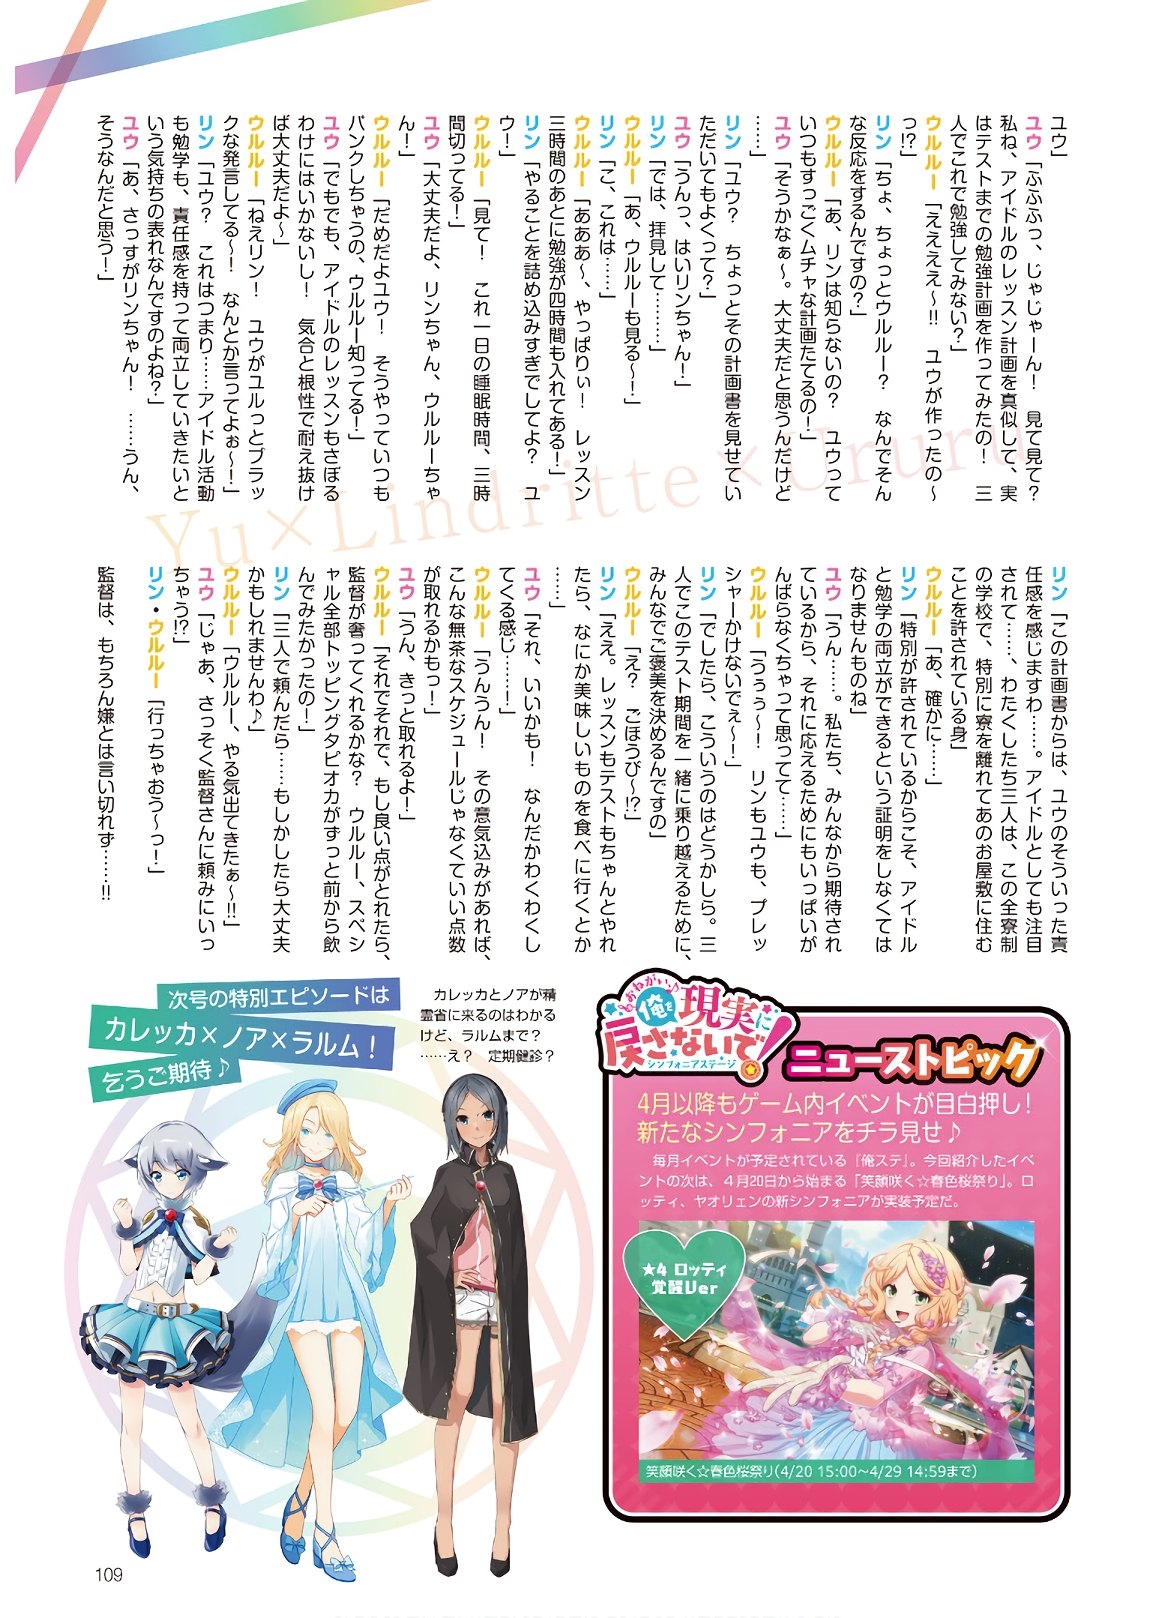 Dengeki G's Magazine #286 - May 2021 106